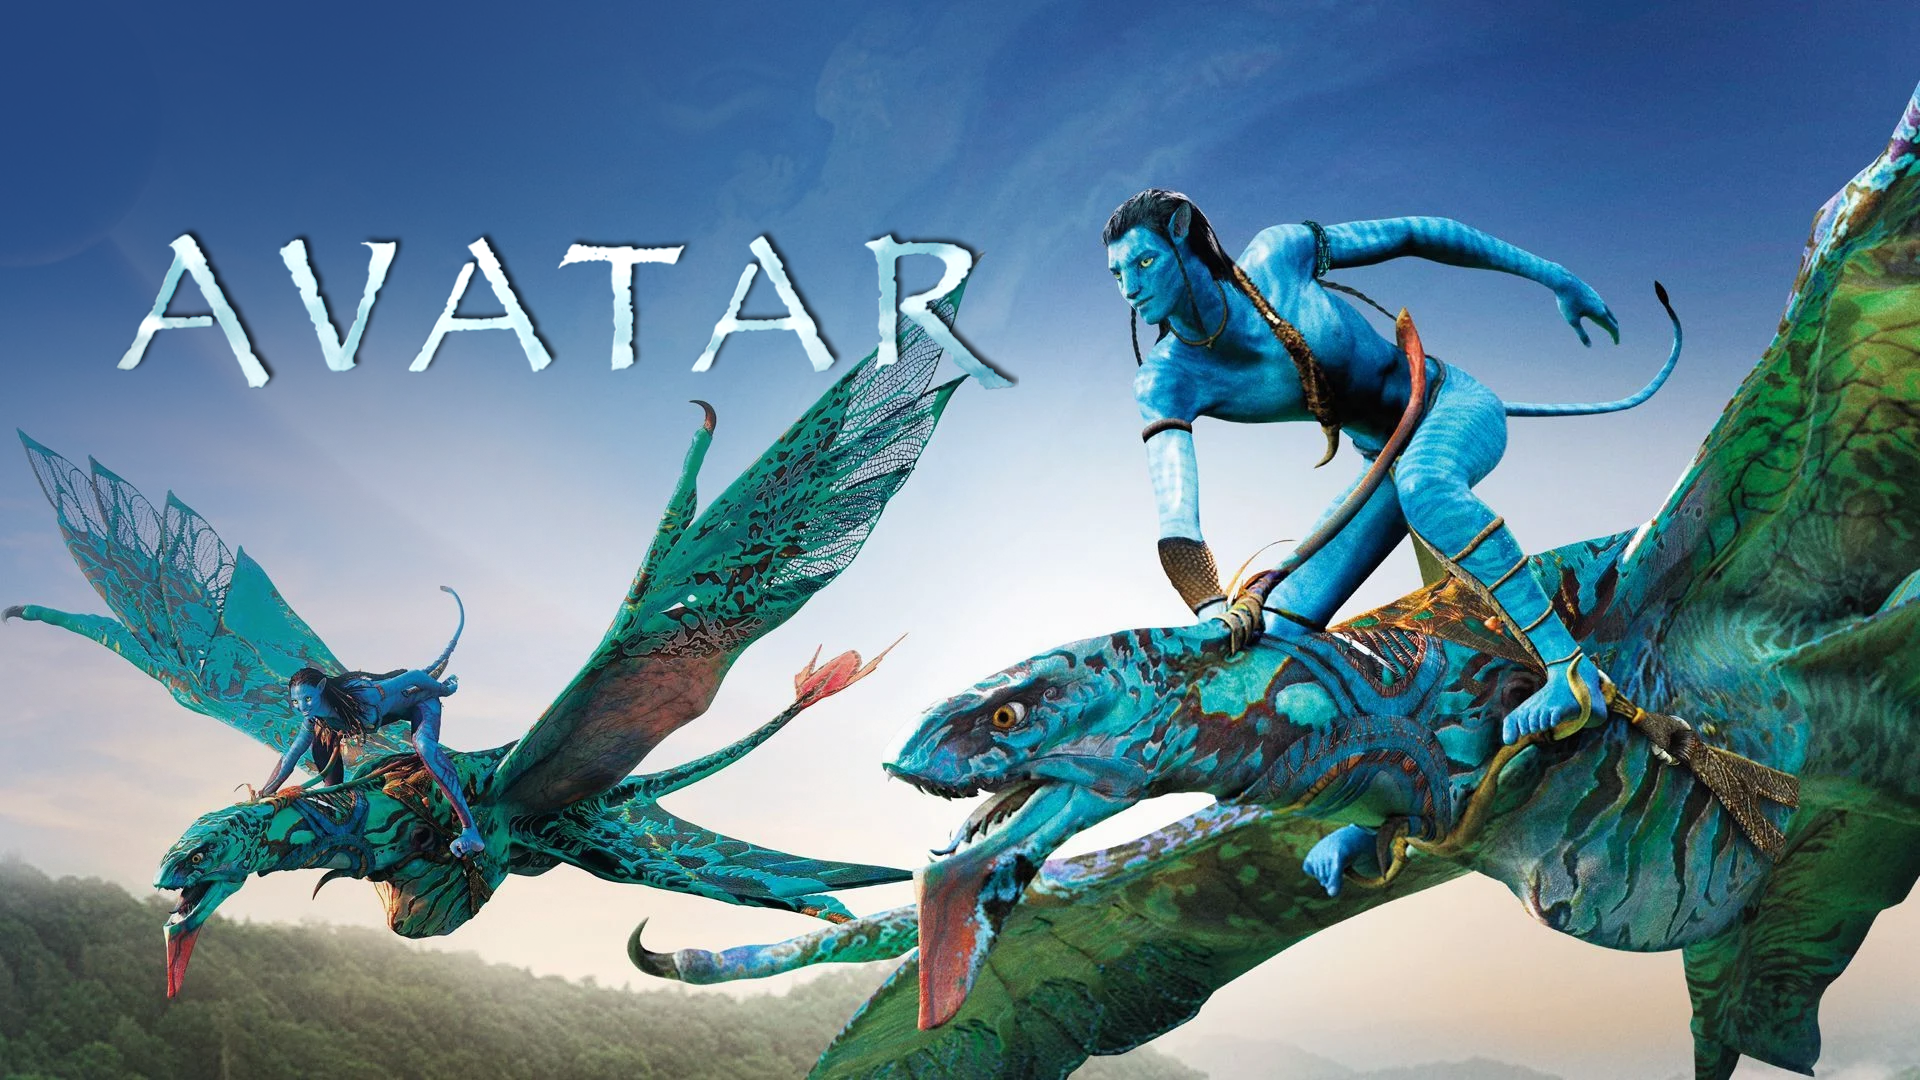 Tác giả phim Avatar đang chuẩn bị cho khán giả cuộc cách mạng điện ảnh   01112016 Sputnik Việt Nam